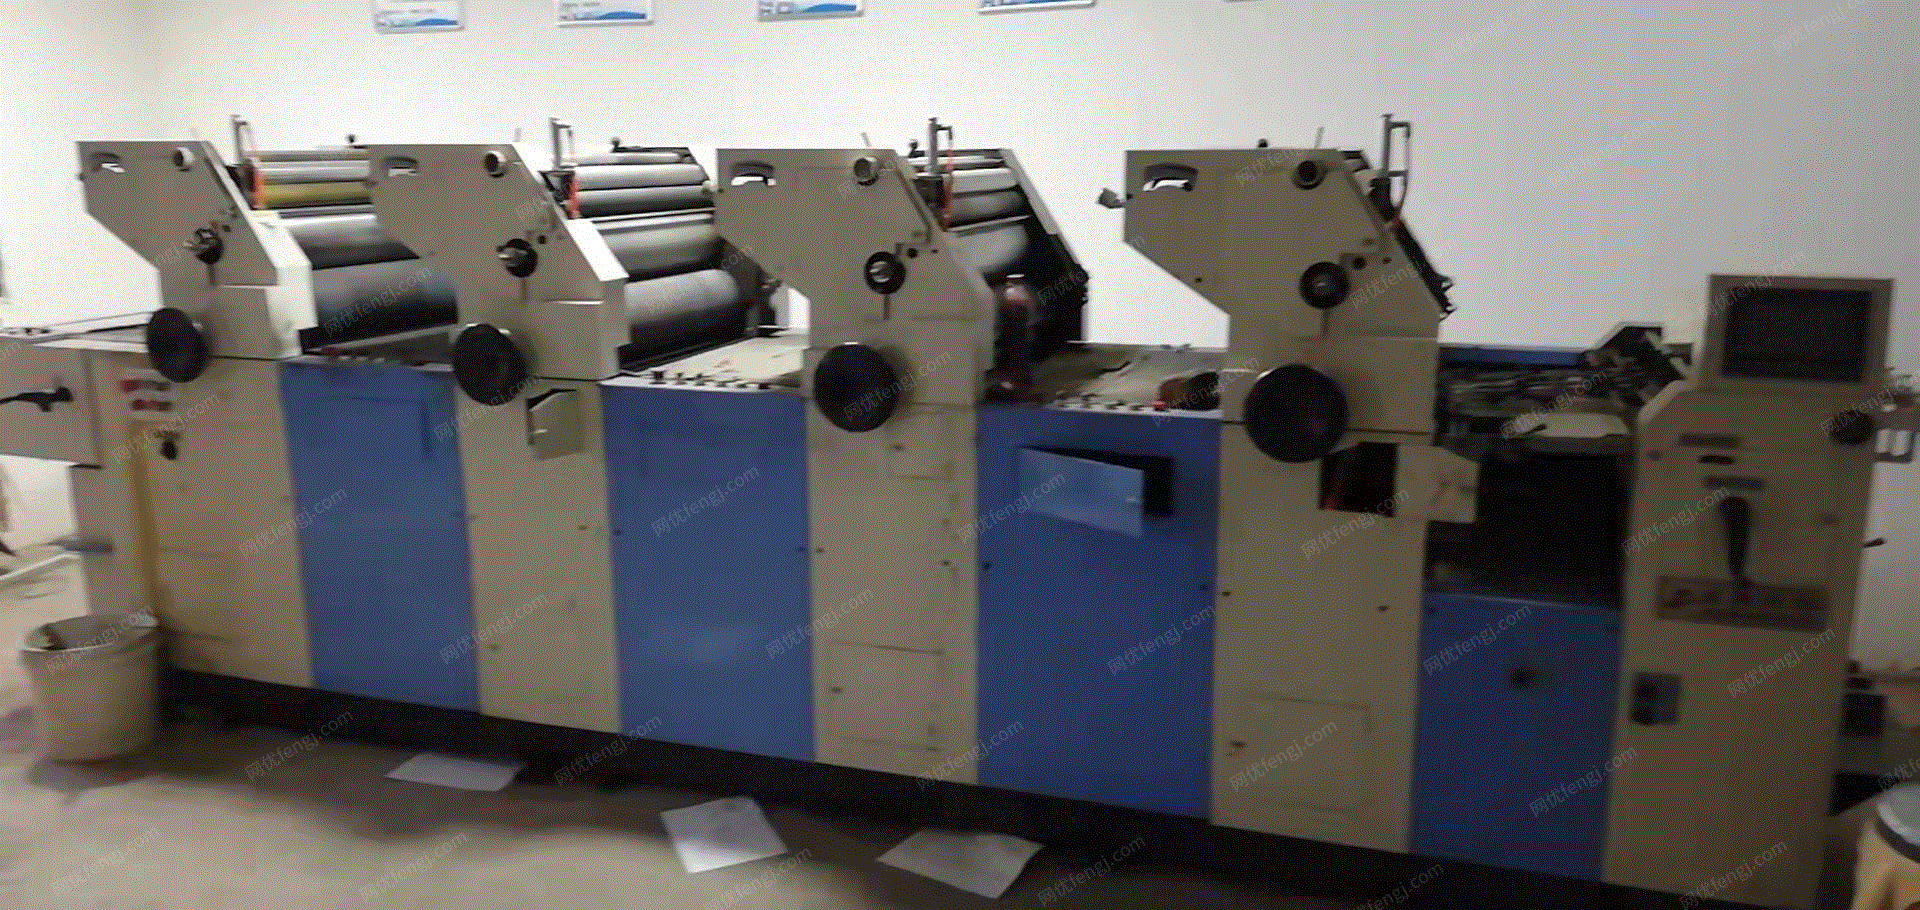 印刷厂出售山东4色印刷机1台,包装机,切纸机各1台,其它不愿说,要的加本机微信报价,有图片